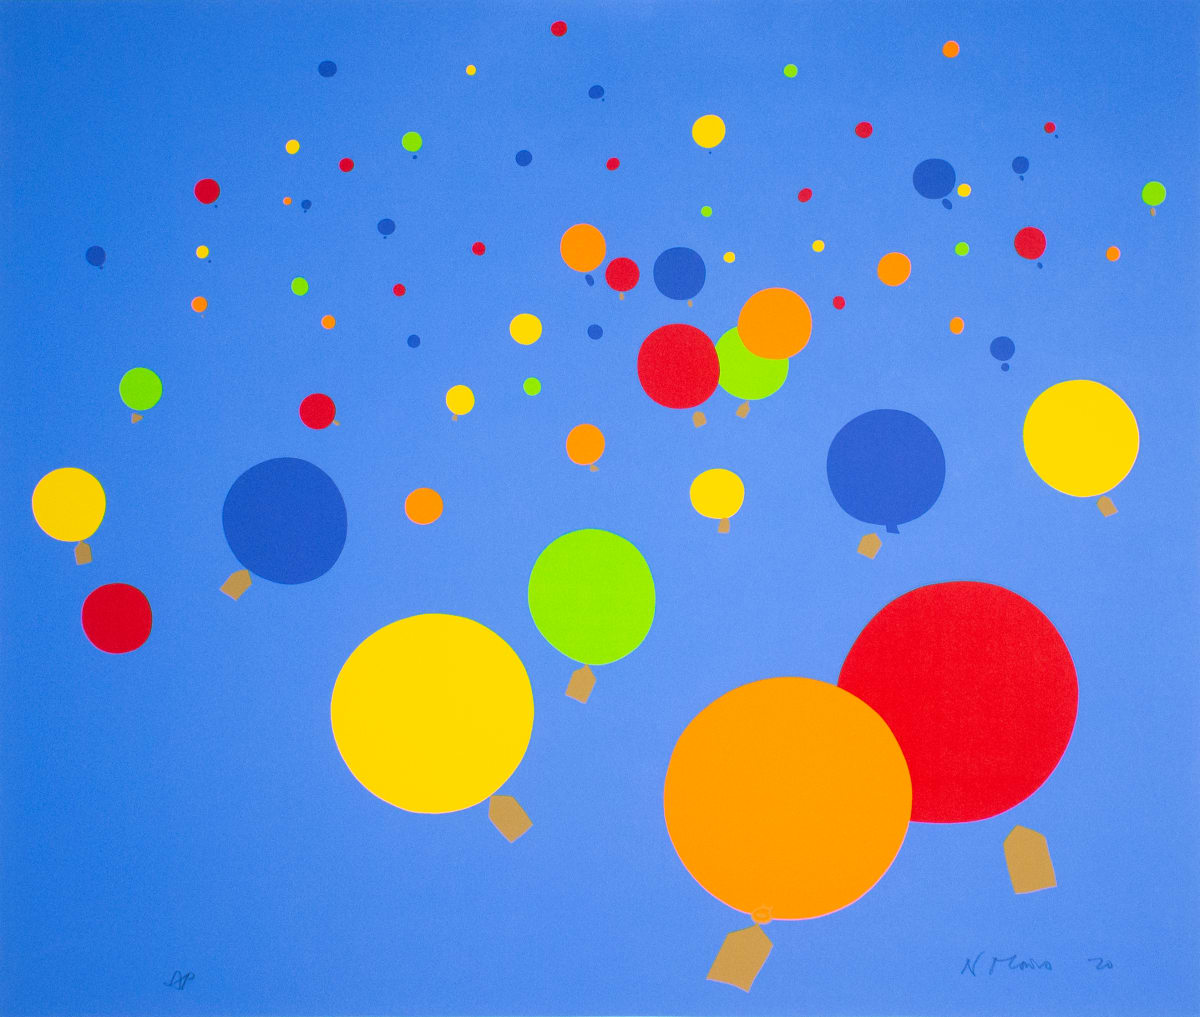 Balloons by Nicholas Monro 